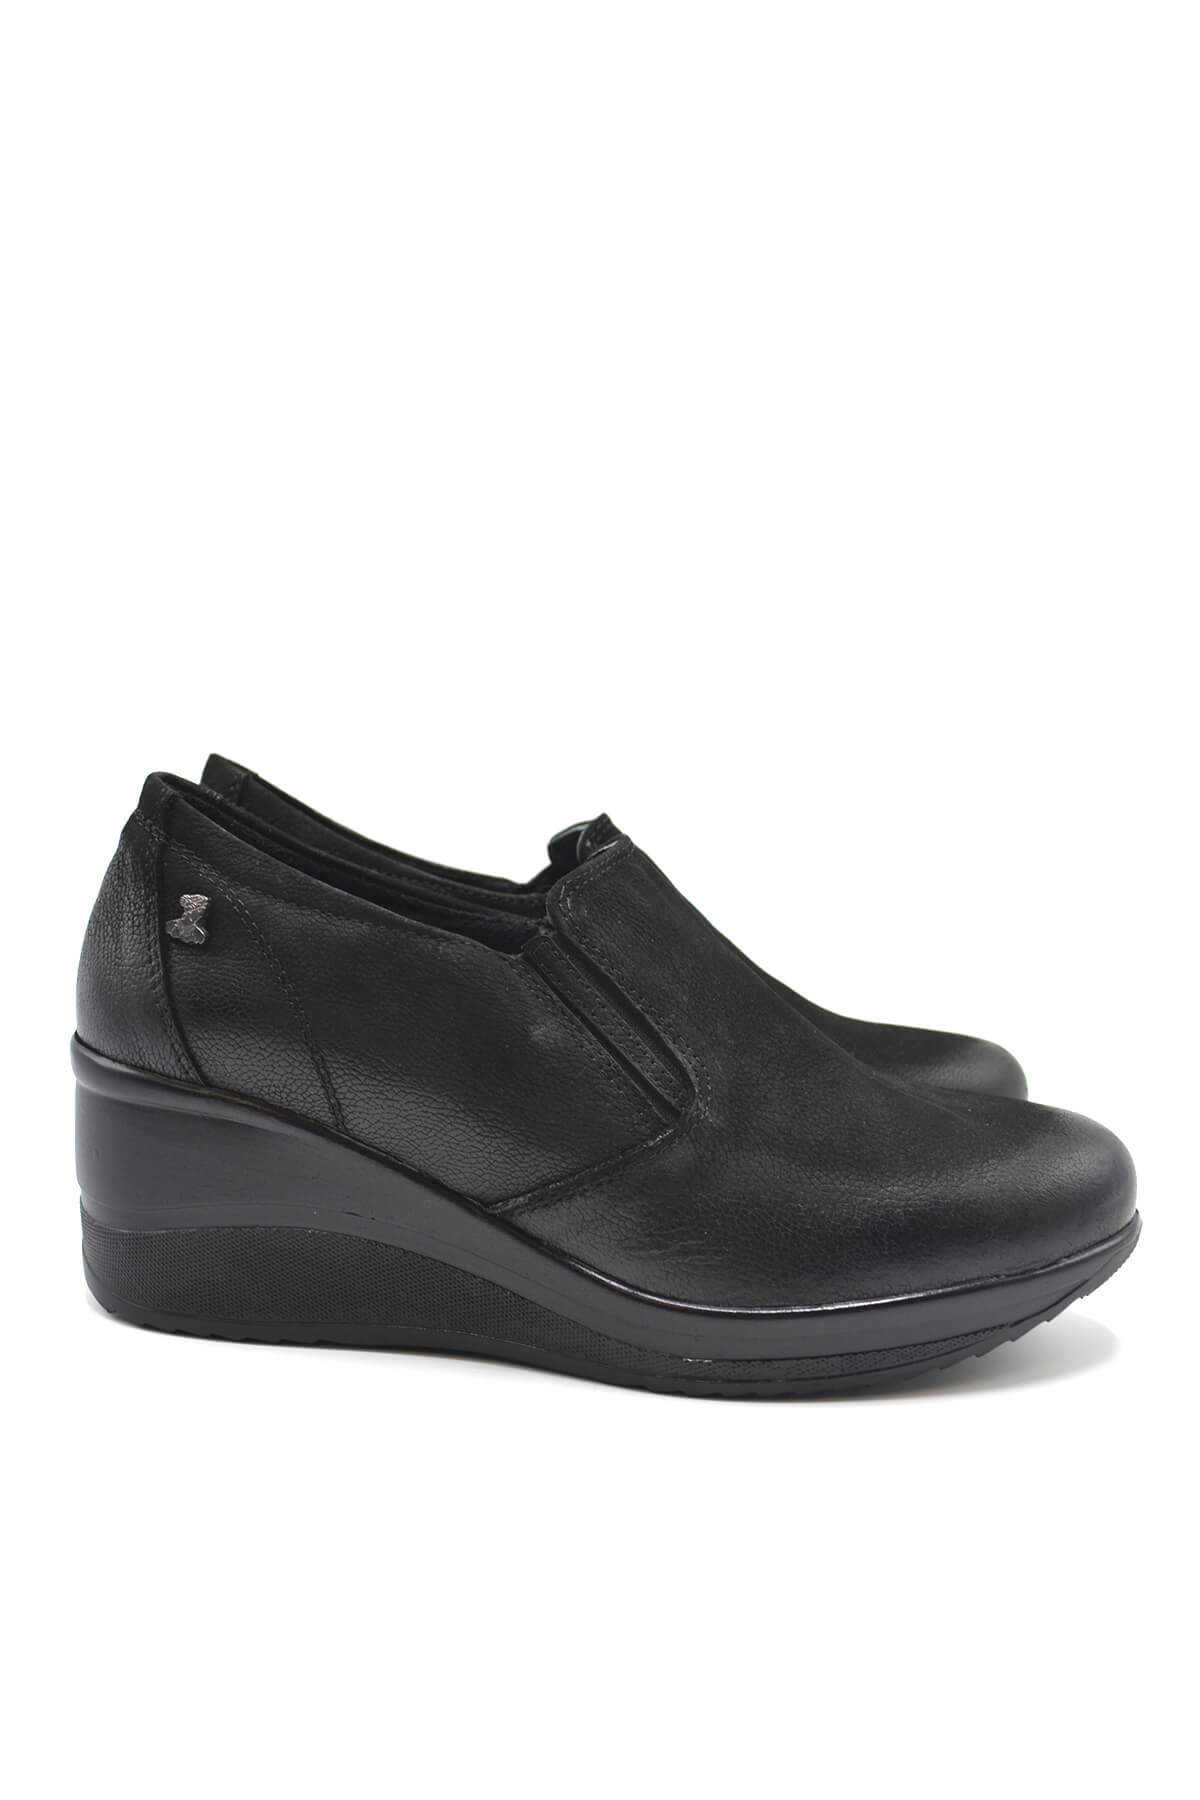 Kadın Dolgu Topuk Deri Ayakkabı Siyah 2111501K